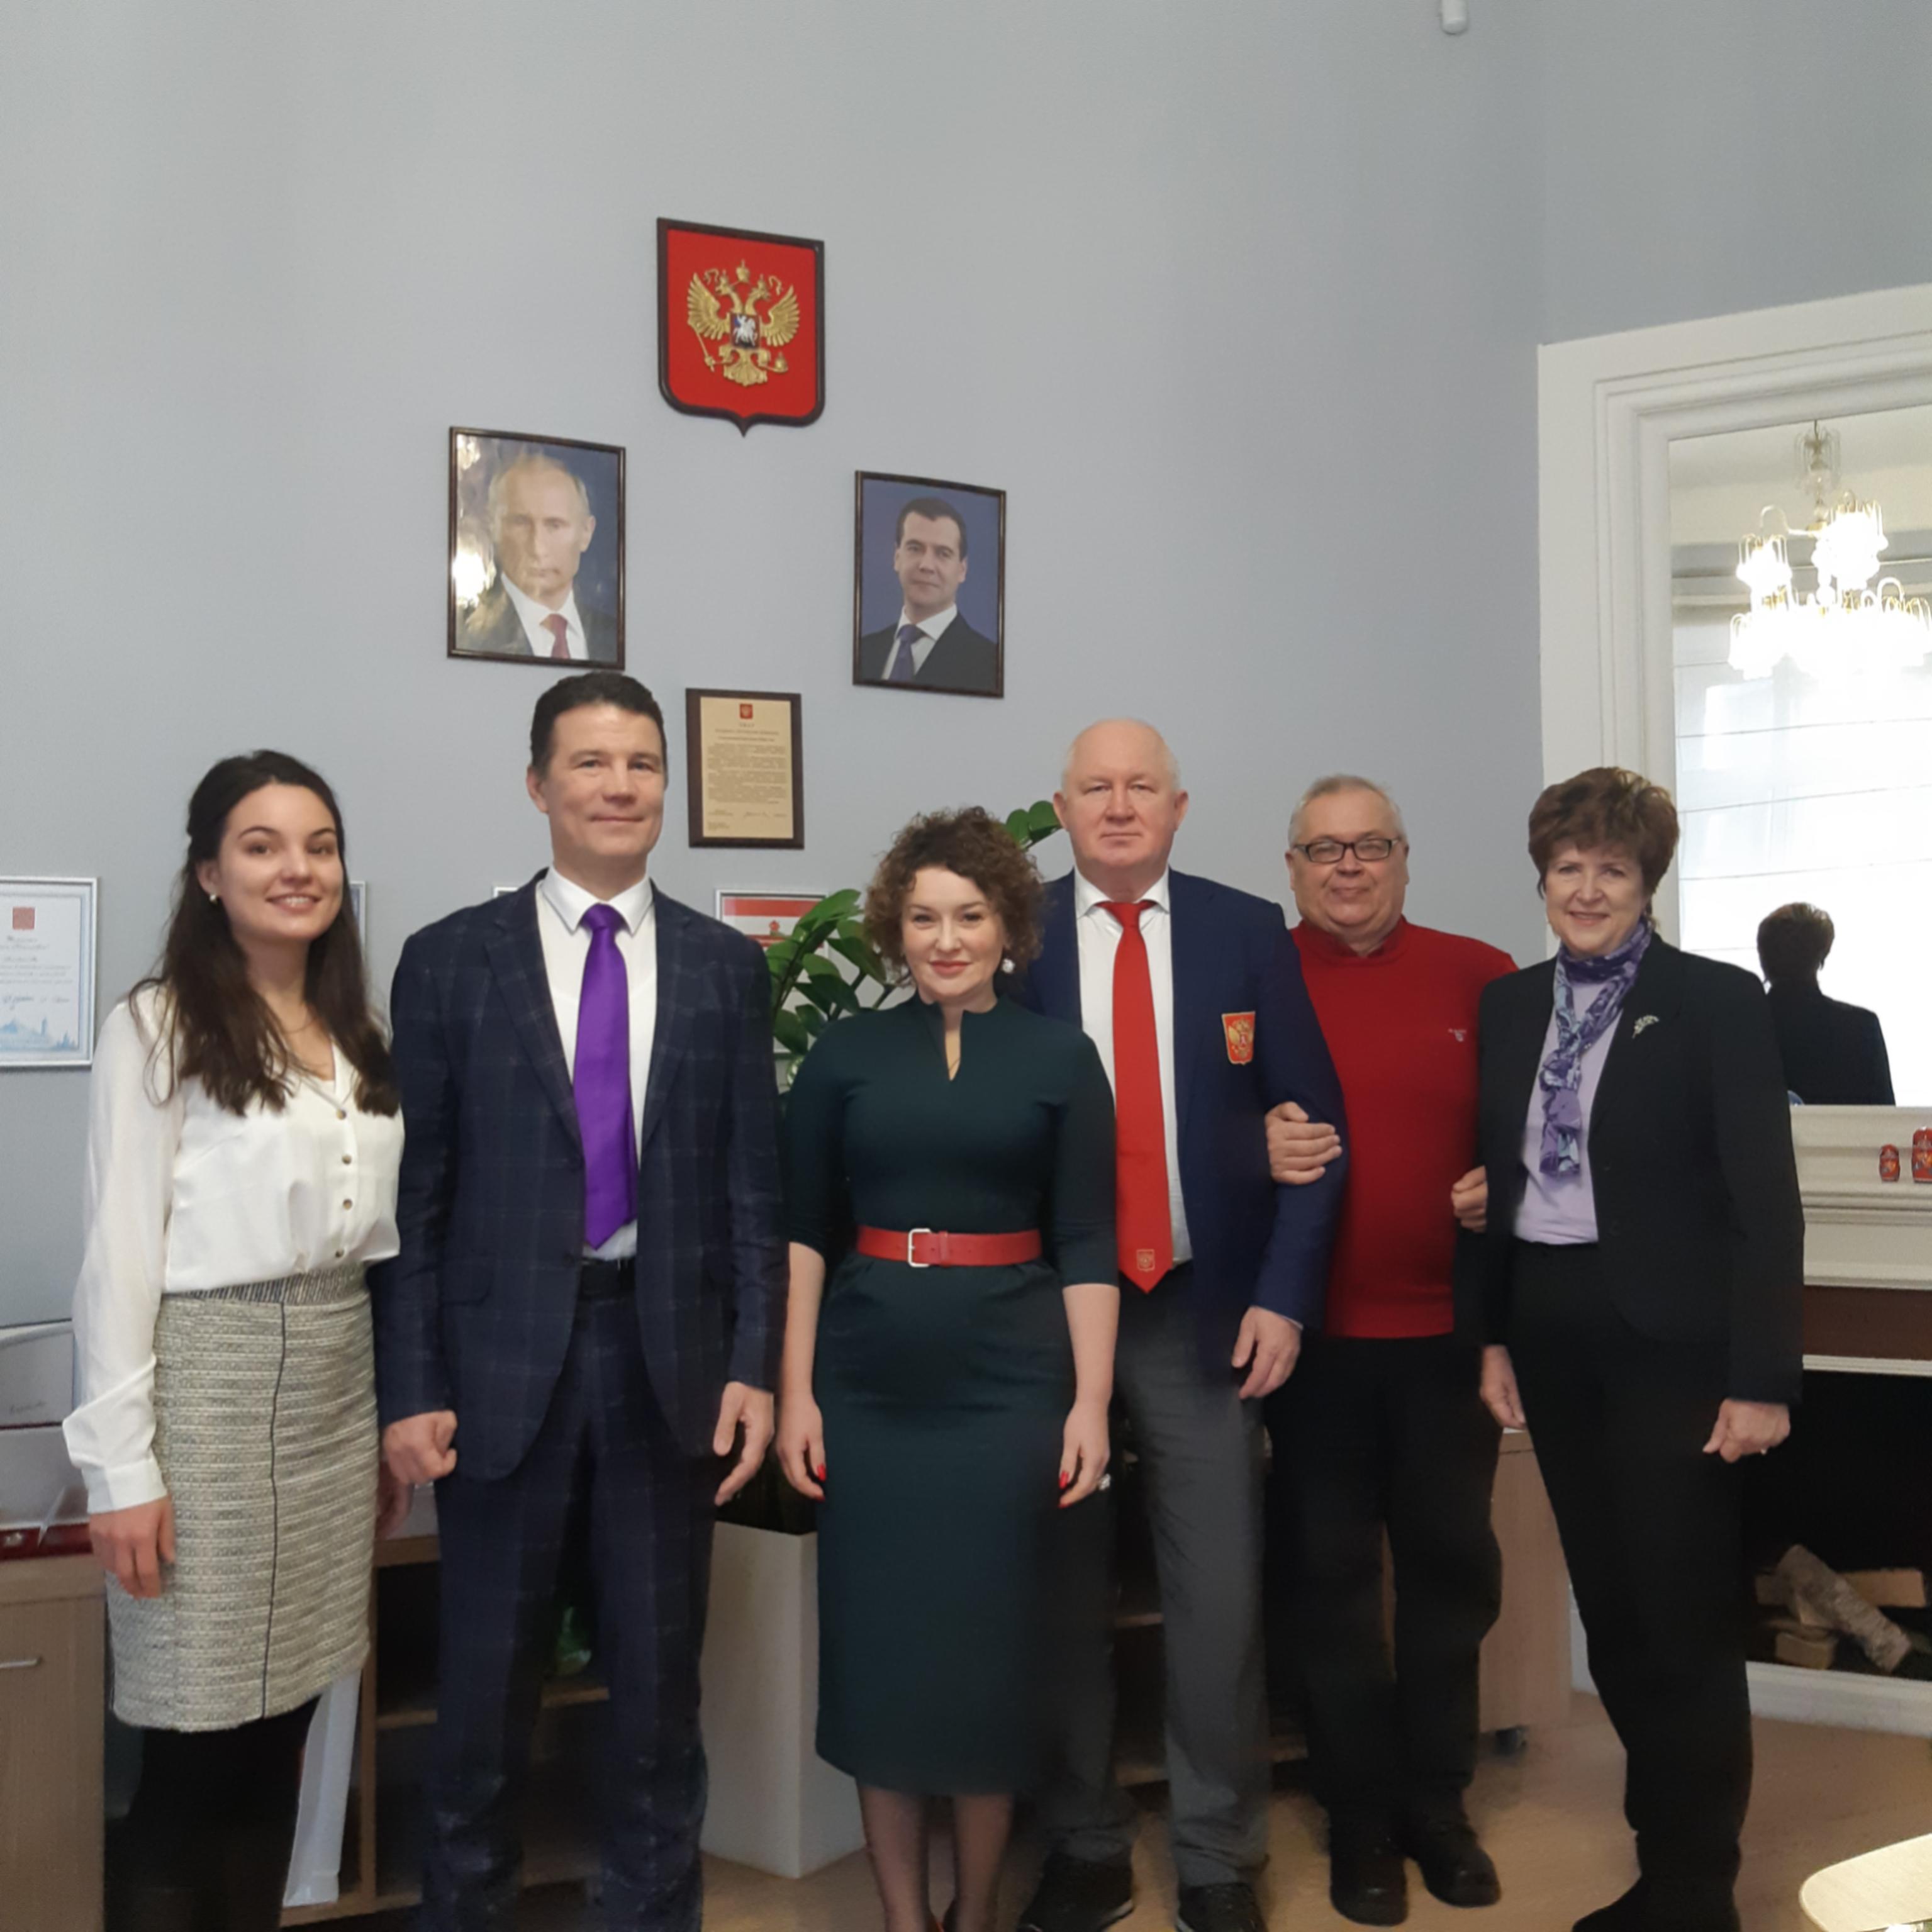 Дисциплинарный комитет Федерации хоккея России (ФХР) и Ассоциация юристов России (АЮР) провели совместное заседание по итогам 2022 года